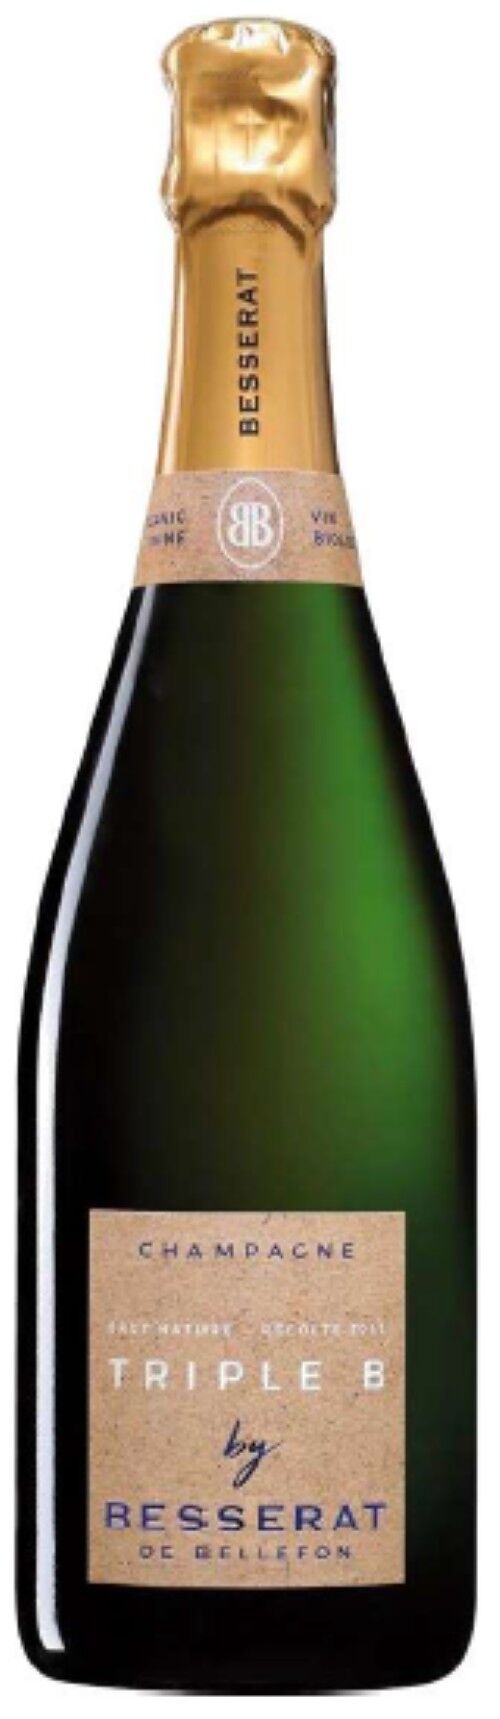 Triple B - Effervescent - Non millésimé - 75cl - Champagne Besserat de Bellefon - Champagne AOC